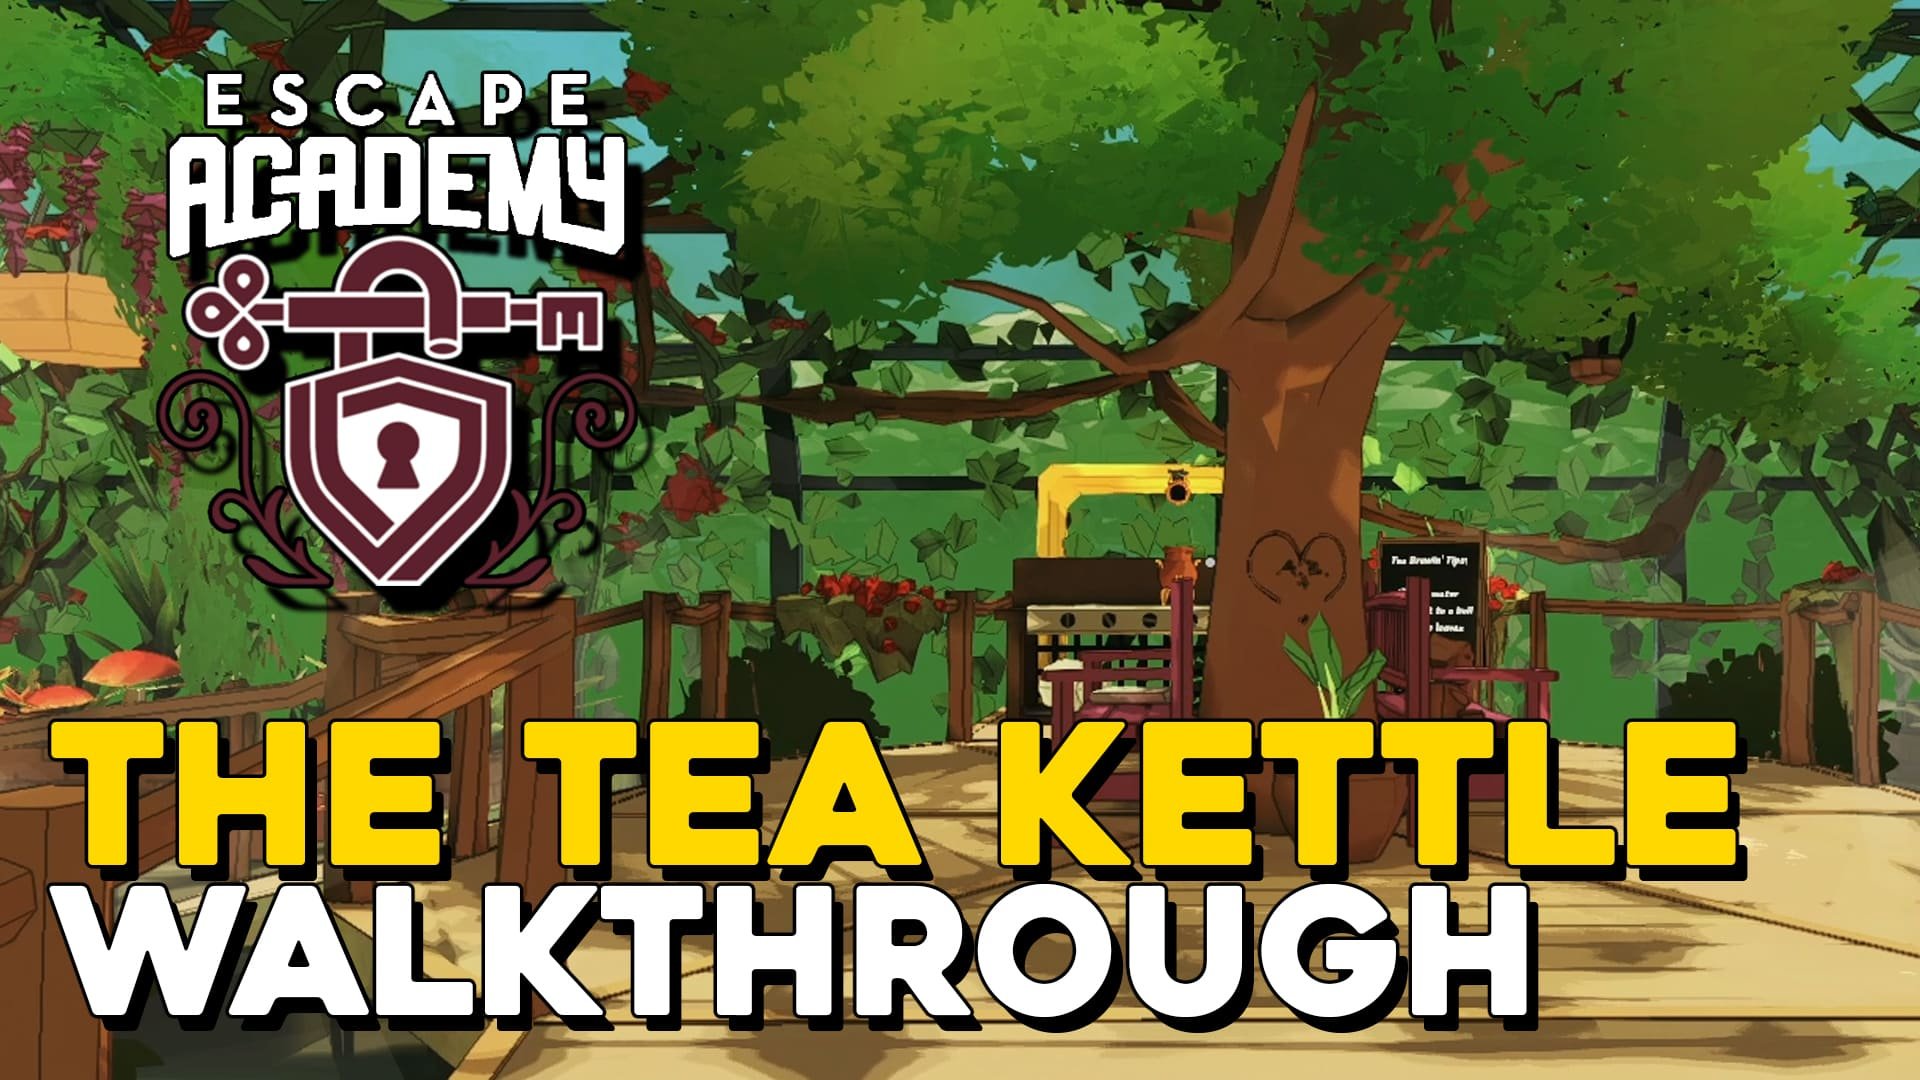 Escape Academy The Tea Kettle Walkthrough (copia) (copia) (Copy)